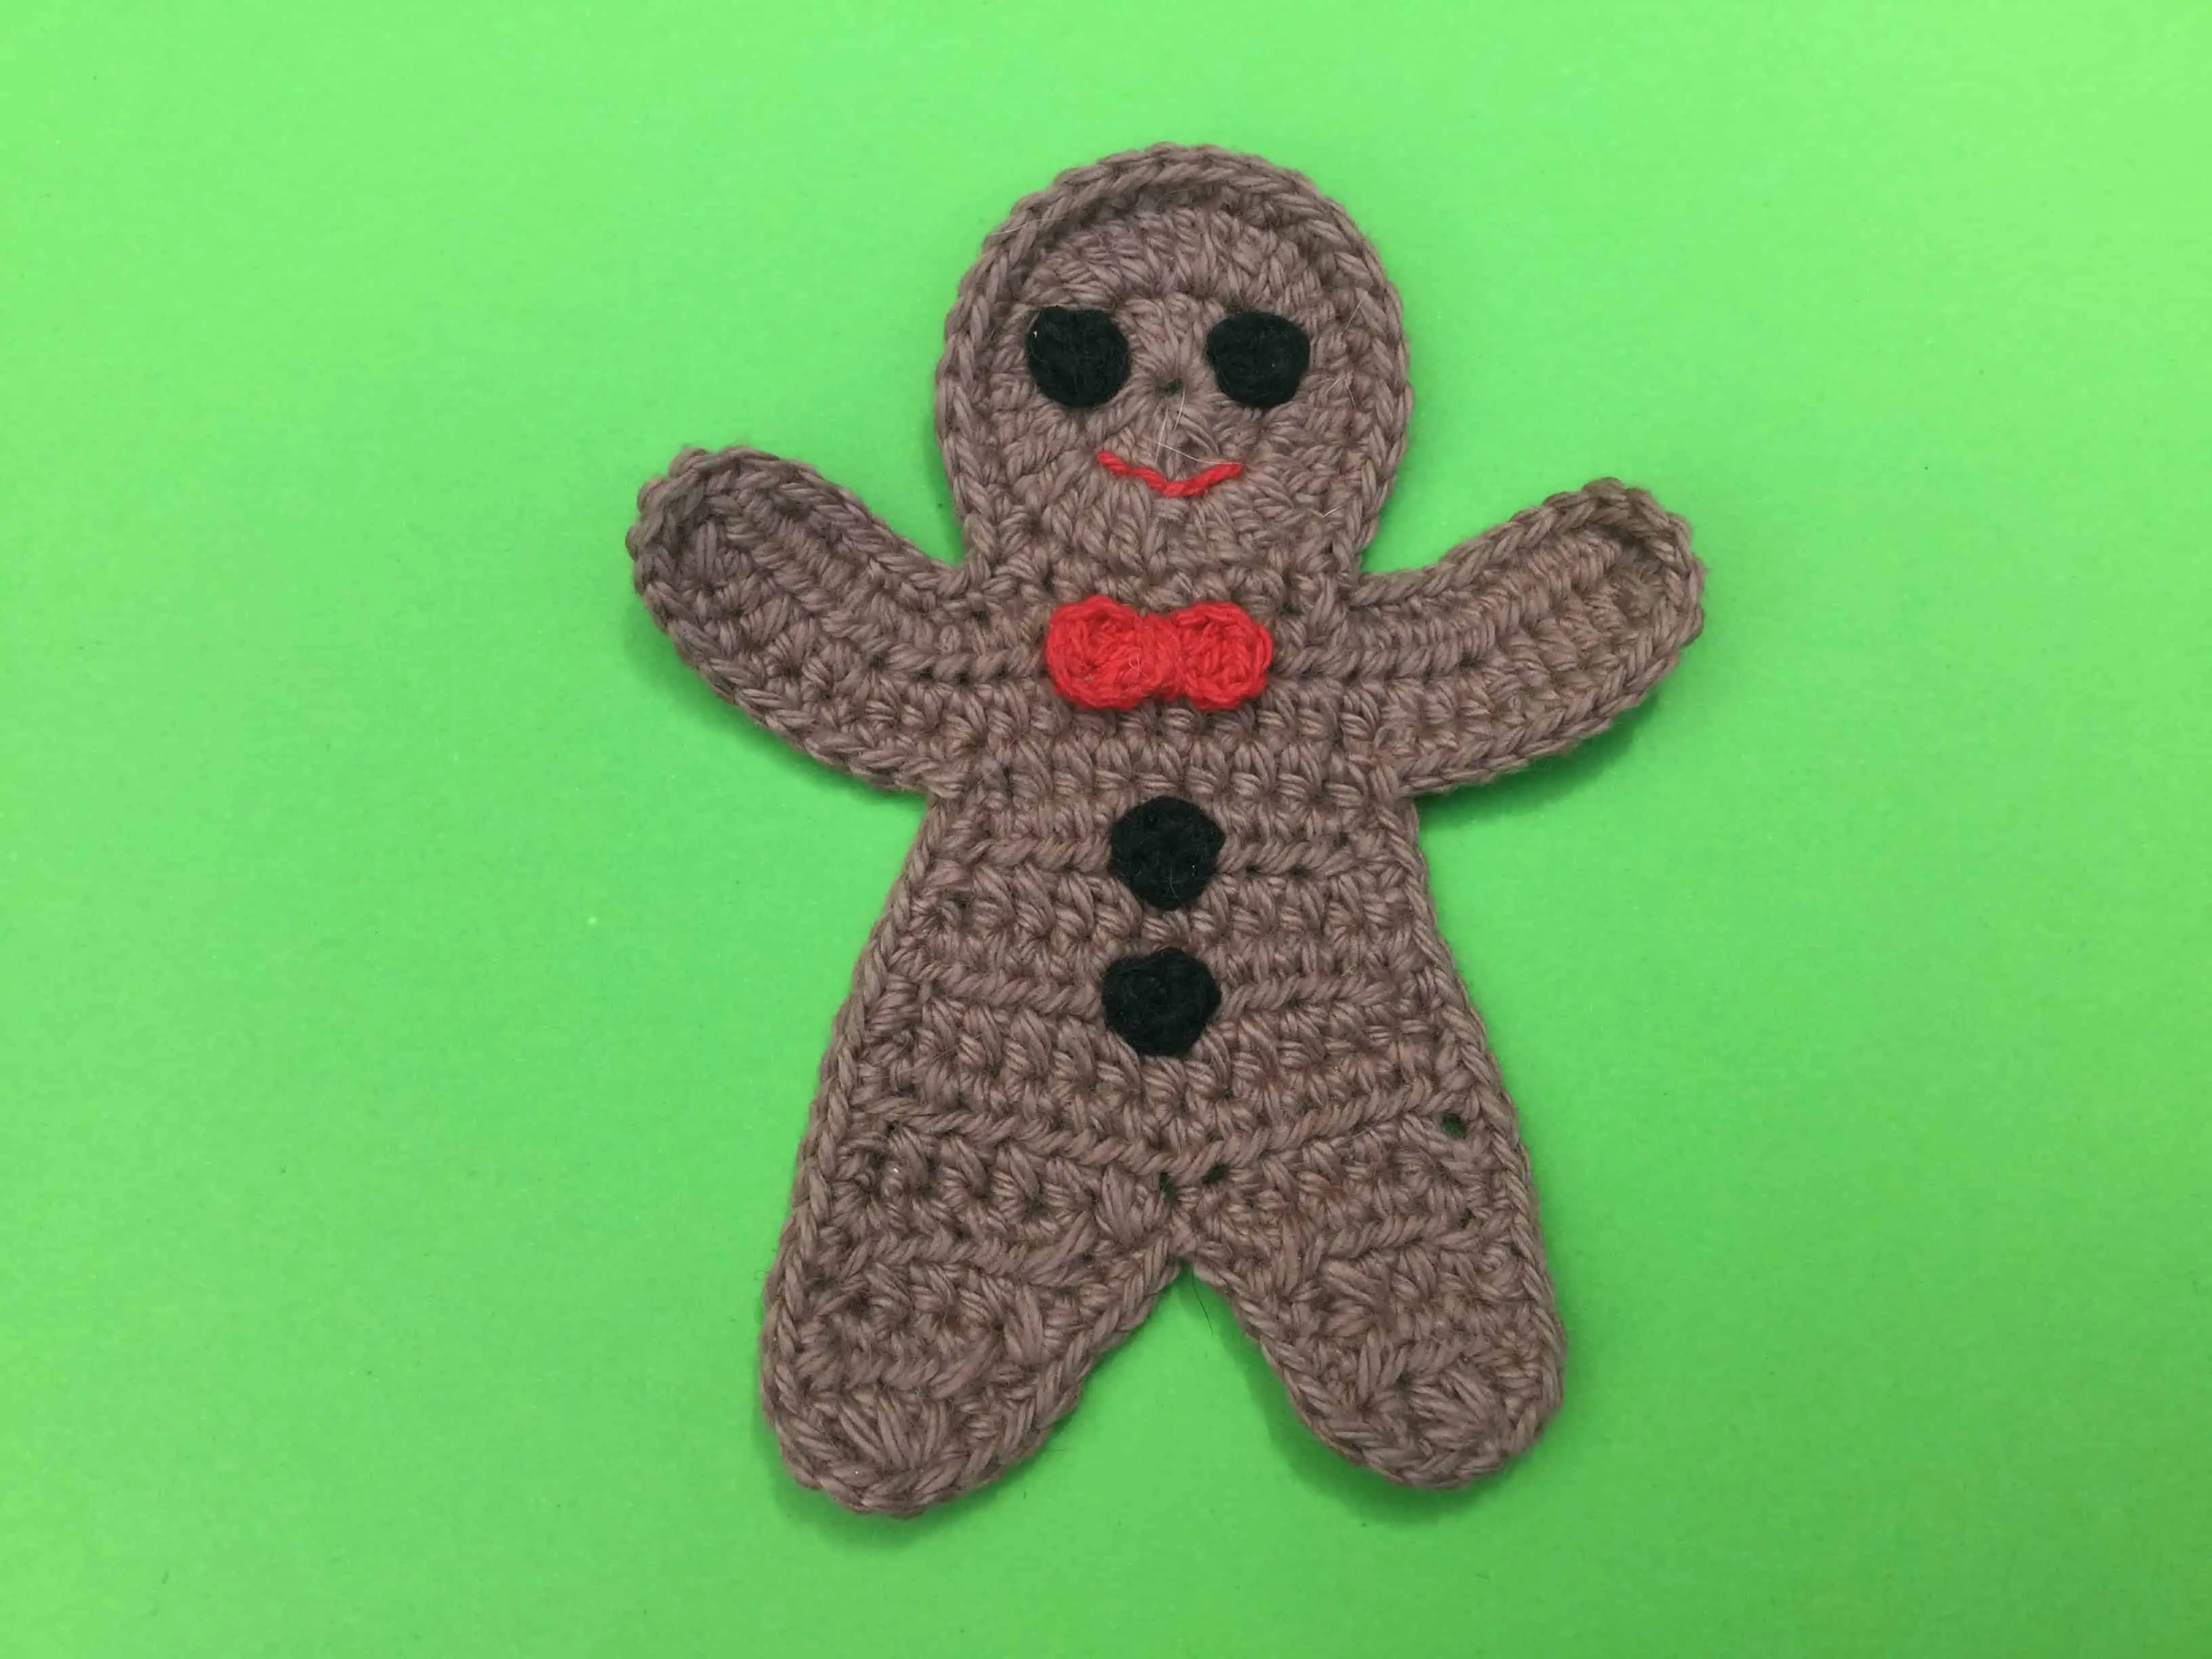 Finished crochet gingerbread man landscape